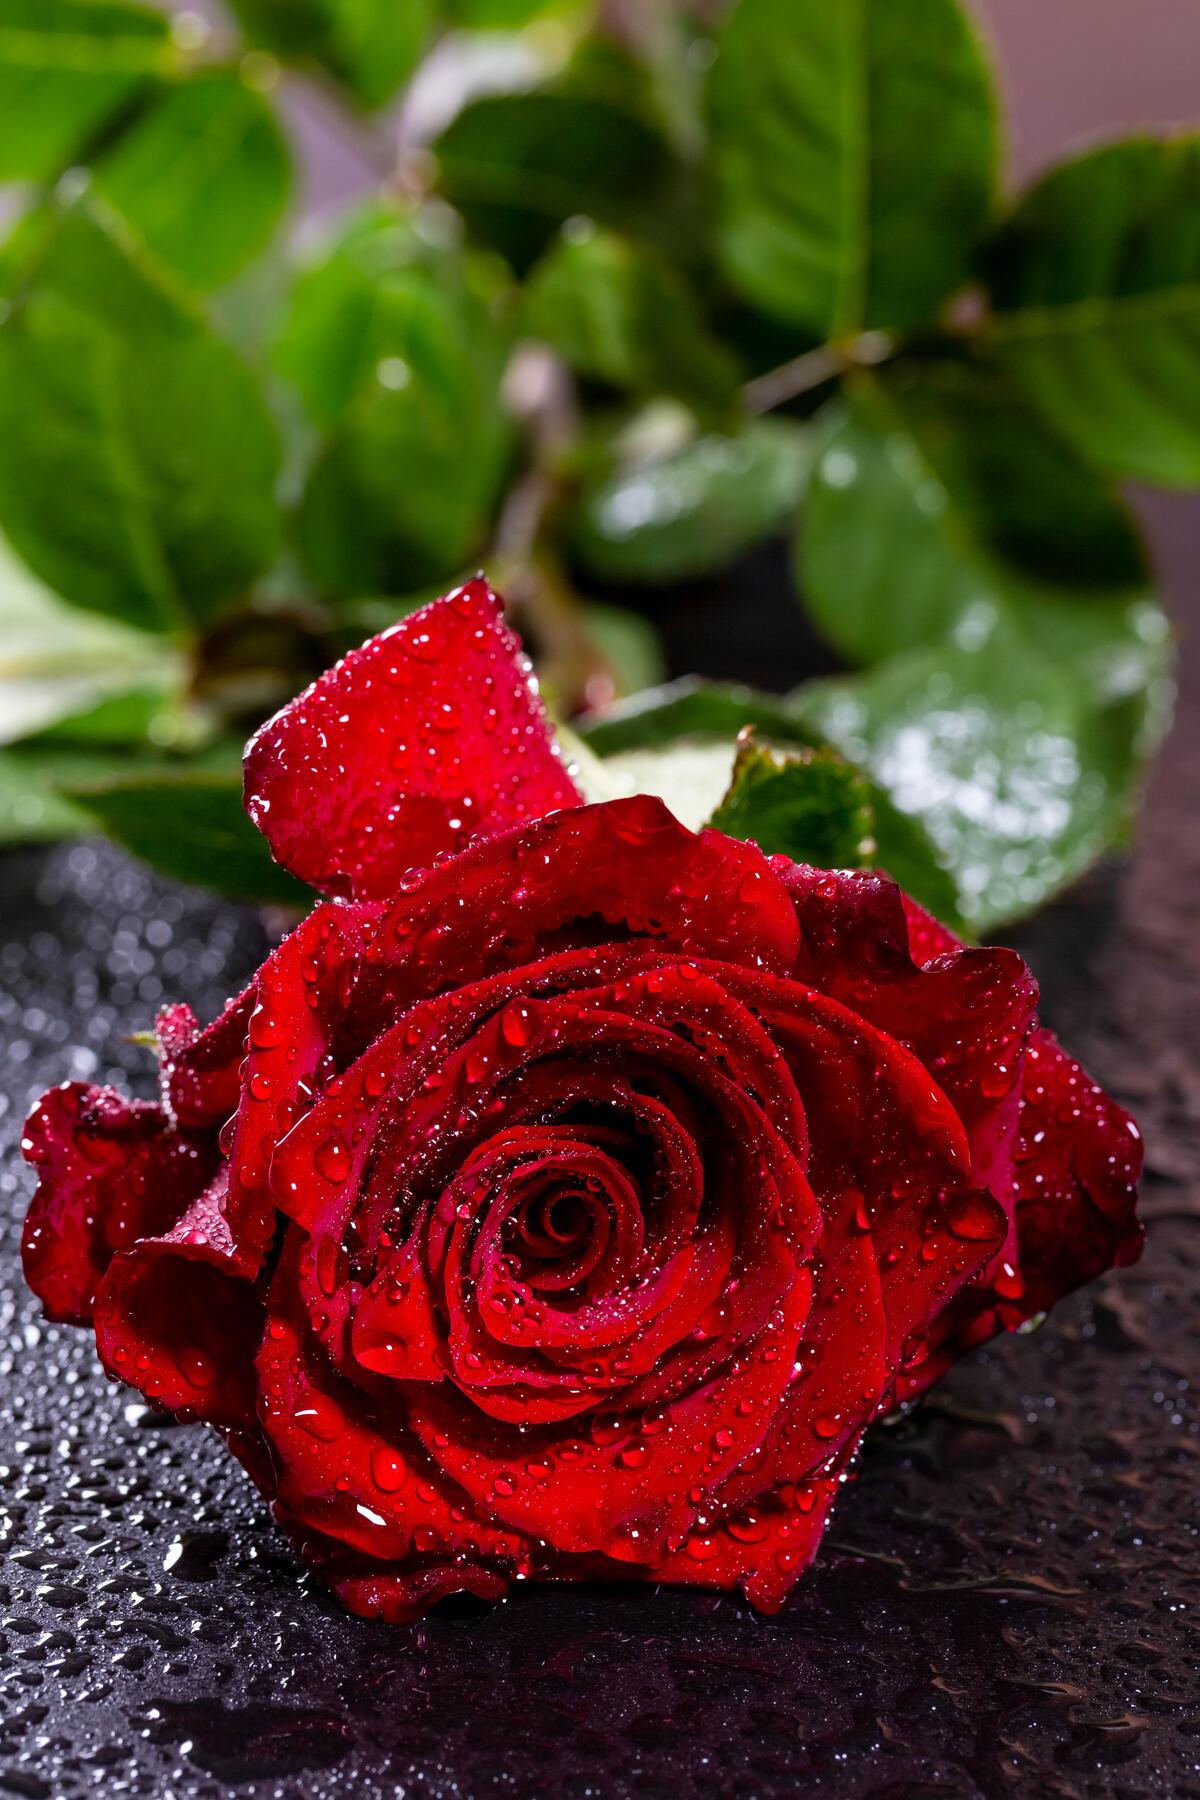 Красная роза под дождем